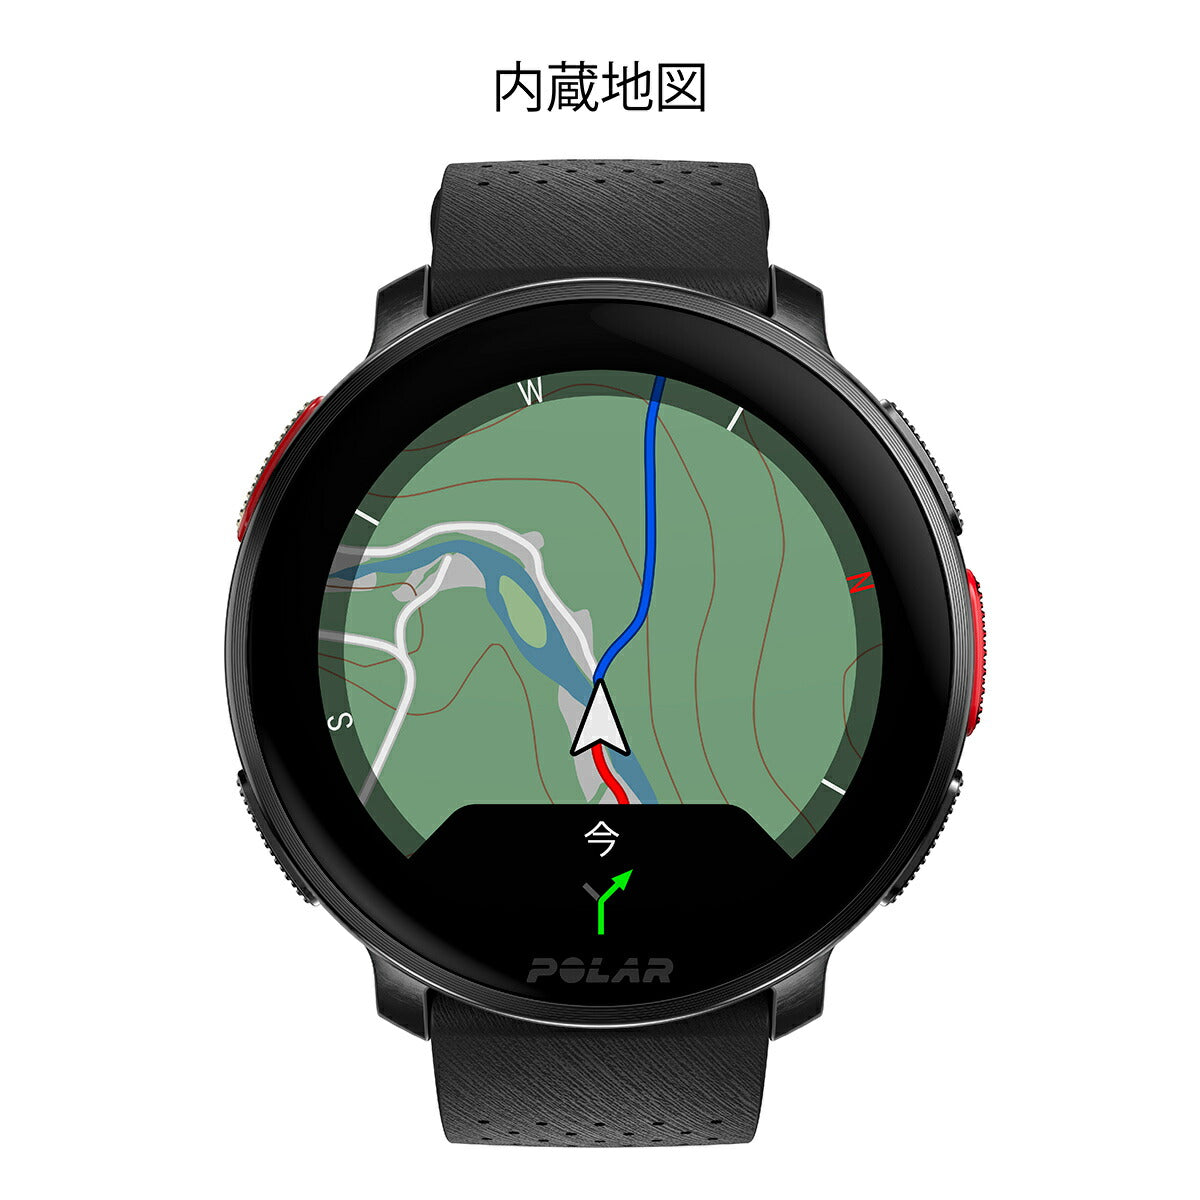 ポラール POLAR VANTAGE V3 スマートウォッチ GPS 心拍 トレーニング マルチスポーツ ランニング 腕時計 ナイトブラック S-L 日本正規品 900108890